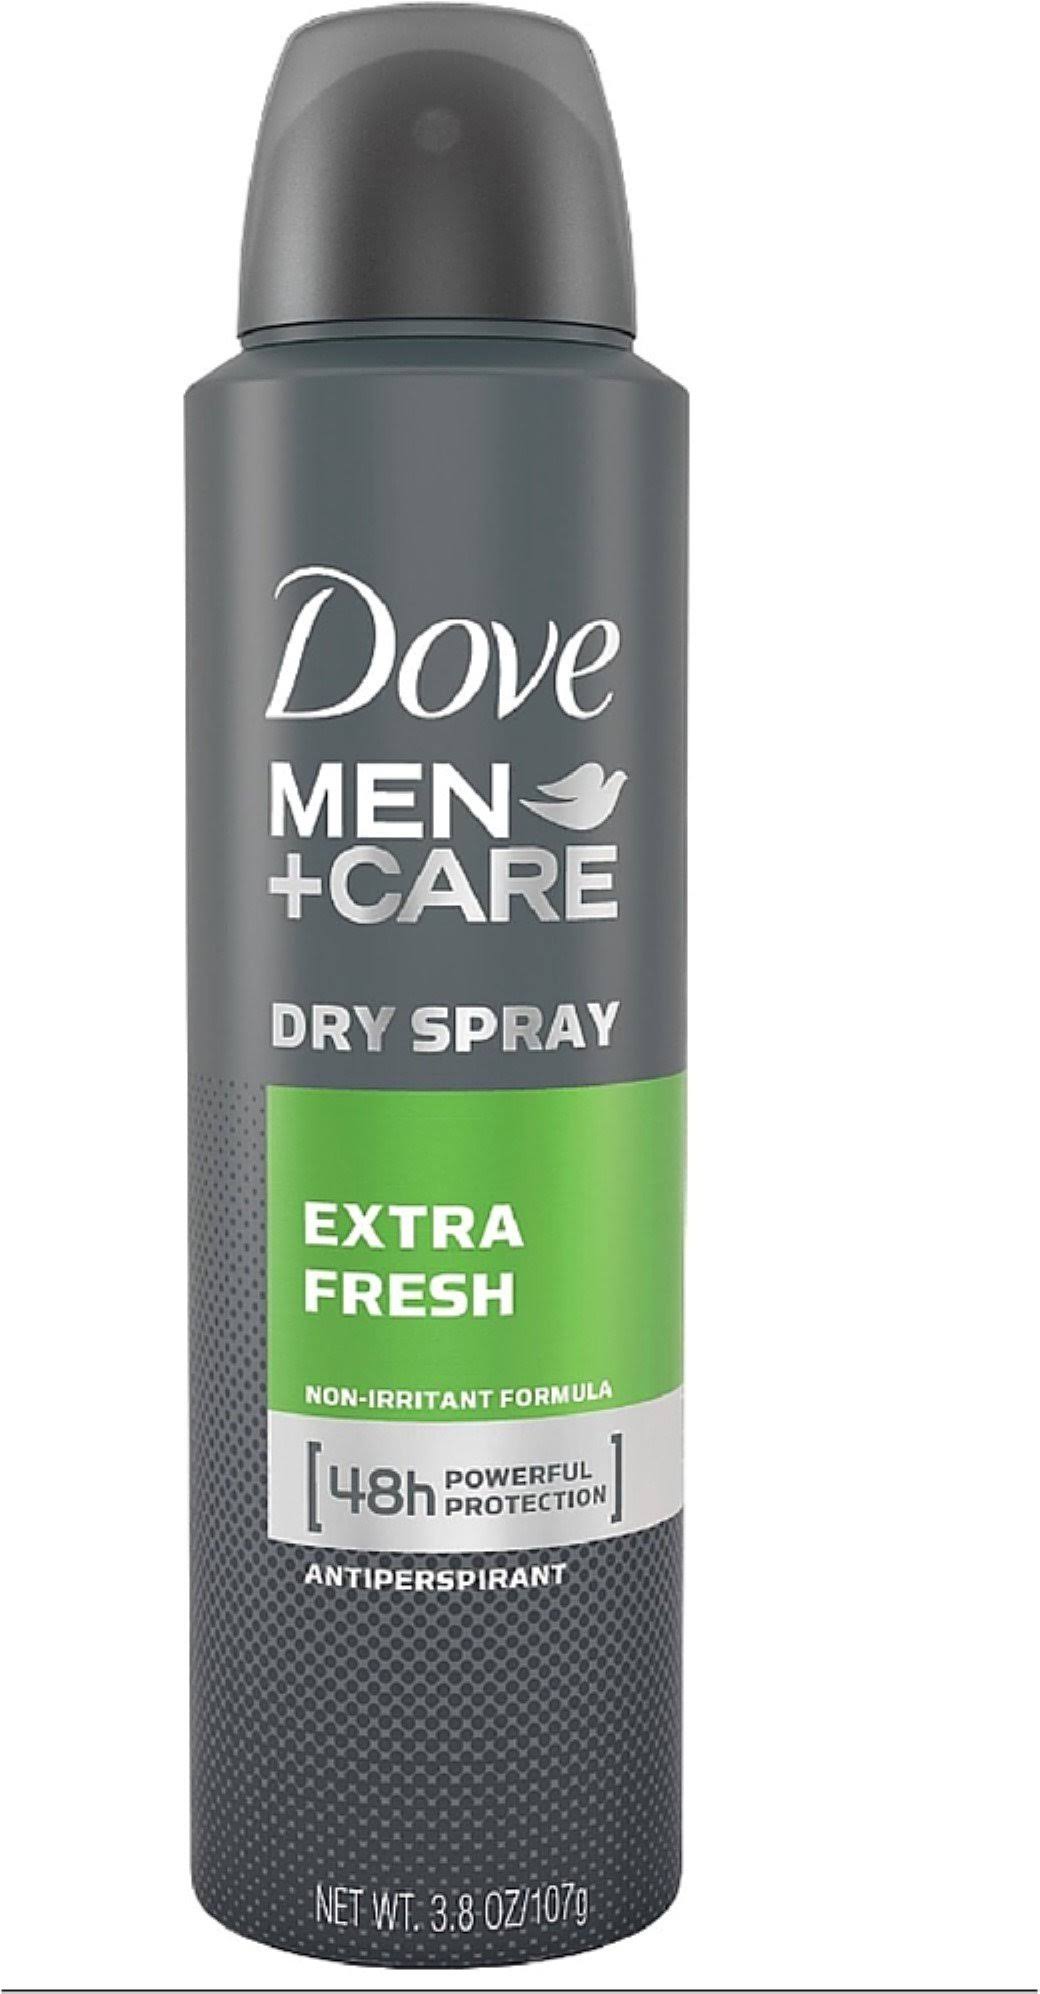 Dove Men+Care Deodorant Spray - Extra Fresh, 3.8oz